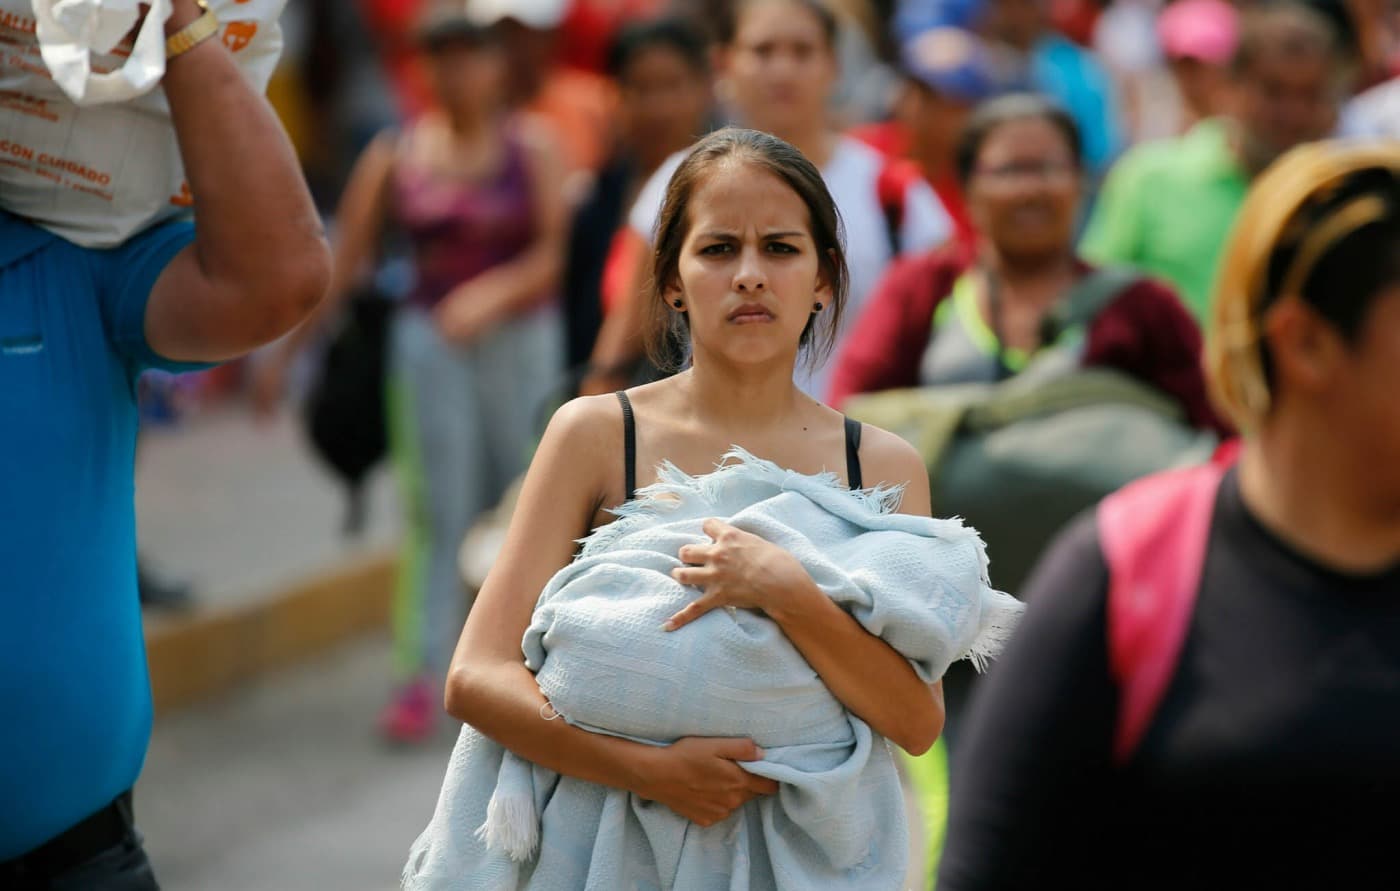 Szüljetek, szüljetek! – gyermekvállalásra sürgeti a nőket a venezuelai elnök